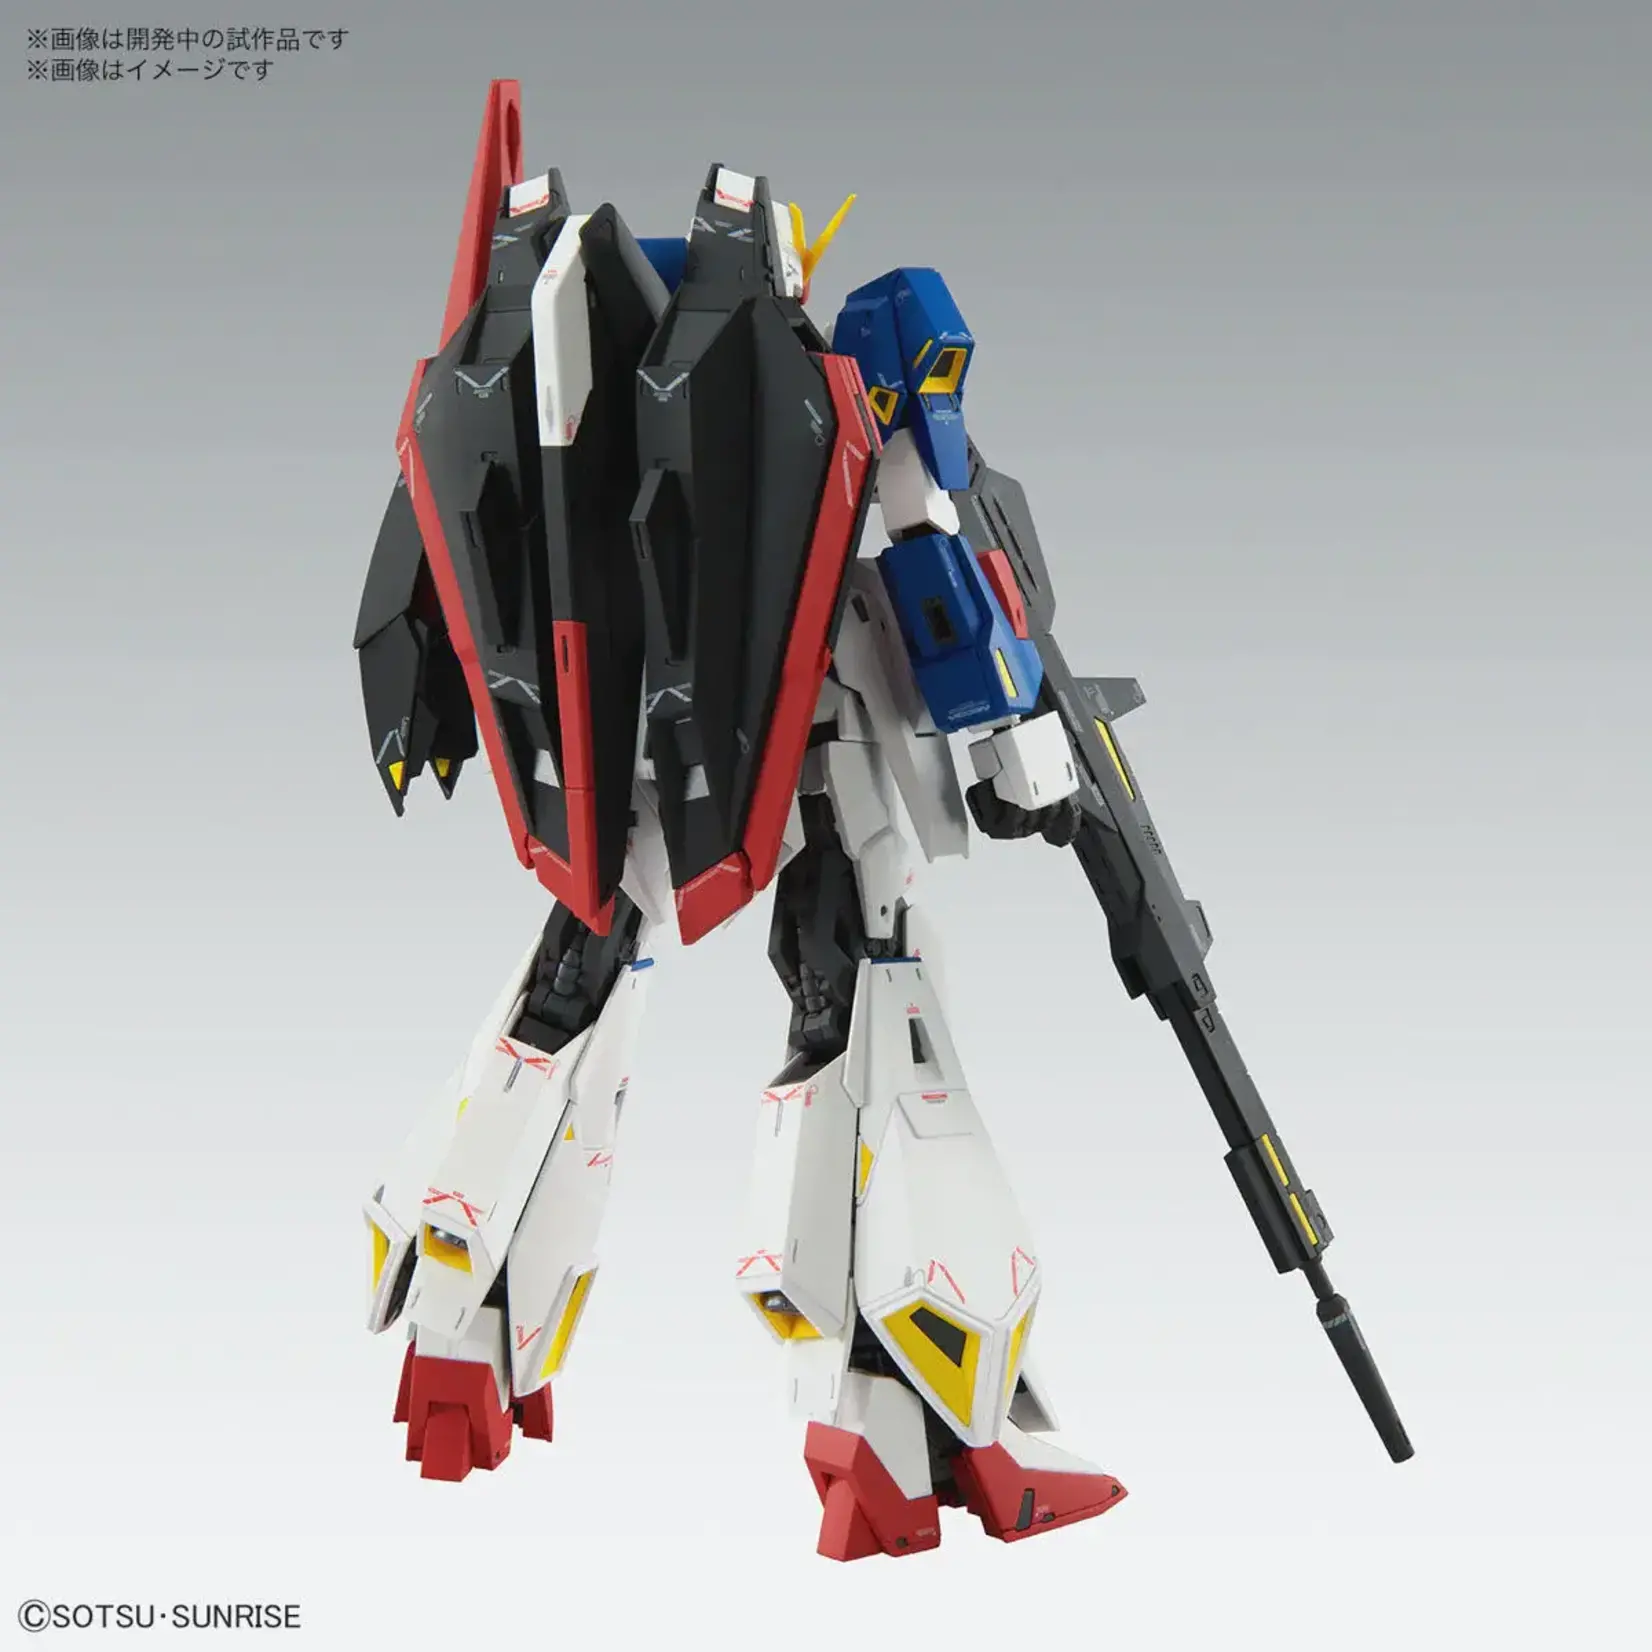 Bandai Bandai 2615240 MG Zeta Gundam (Ver. Ka) "Mobile Suit Zeta Gundam"